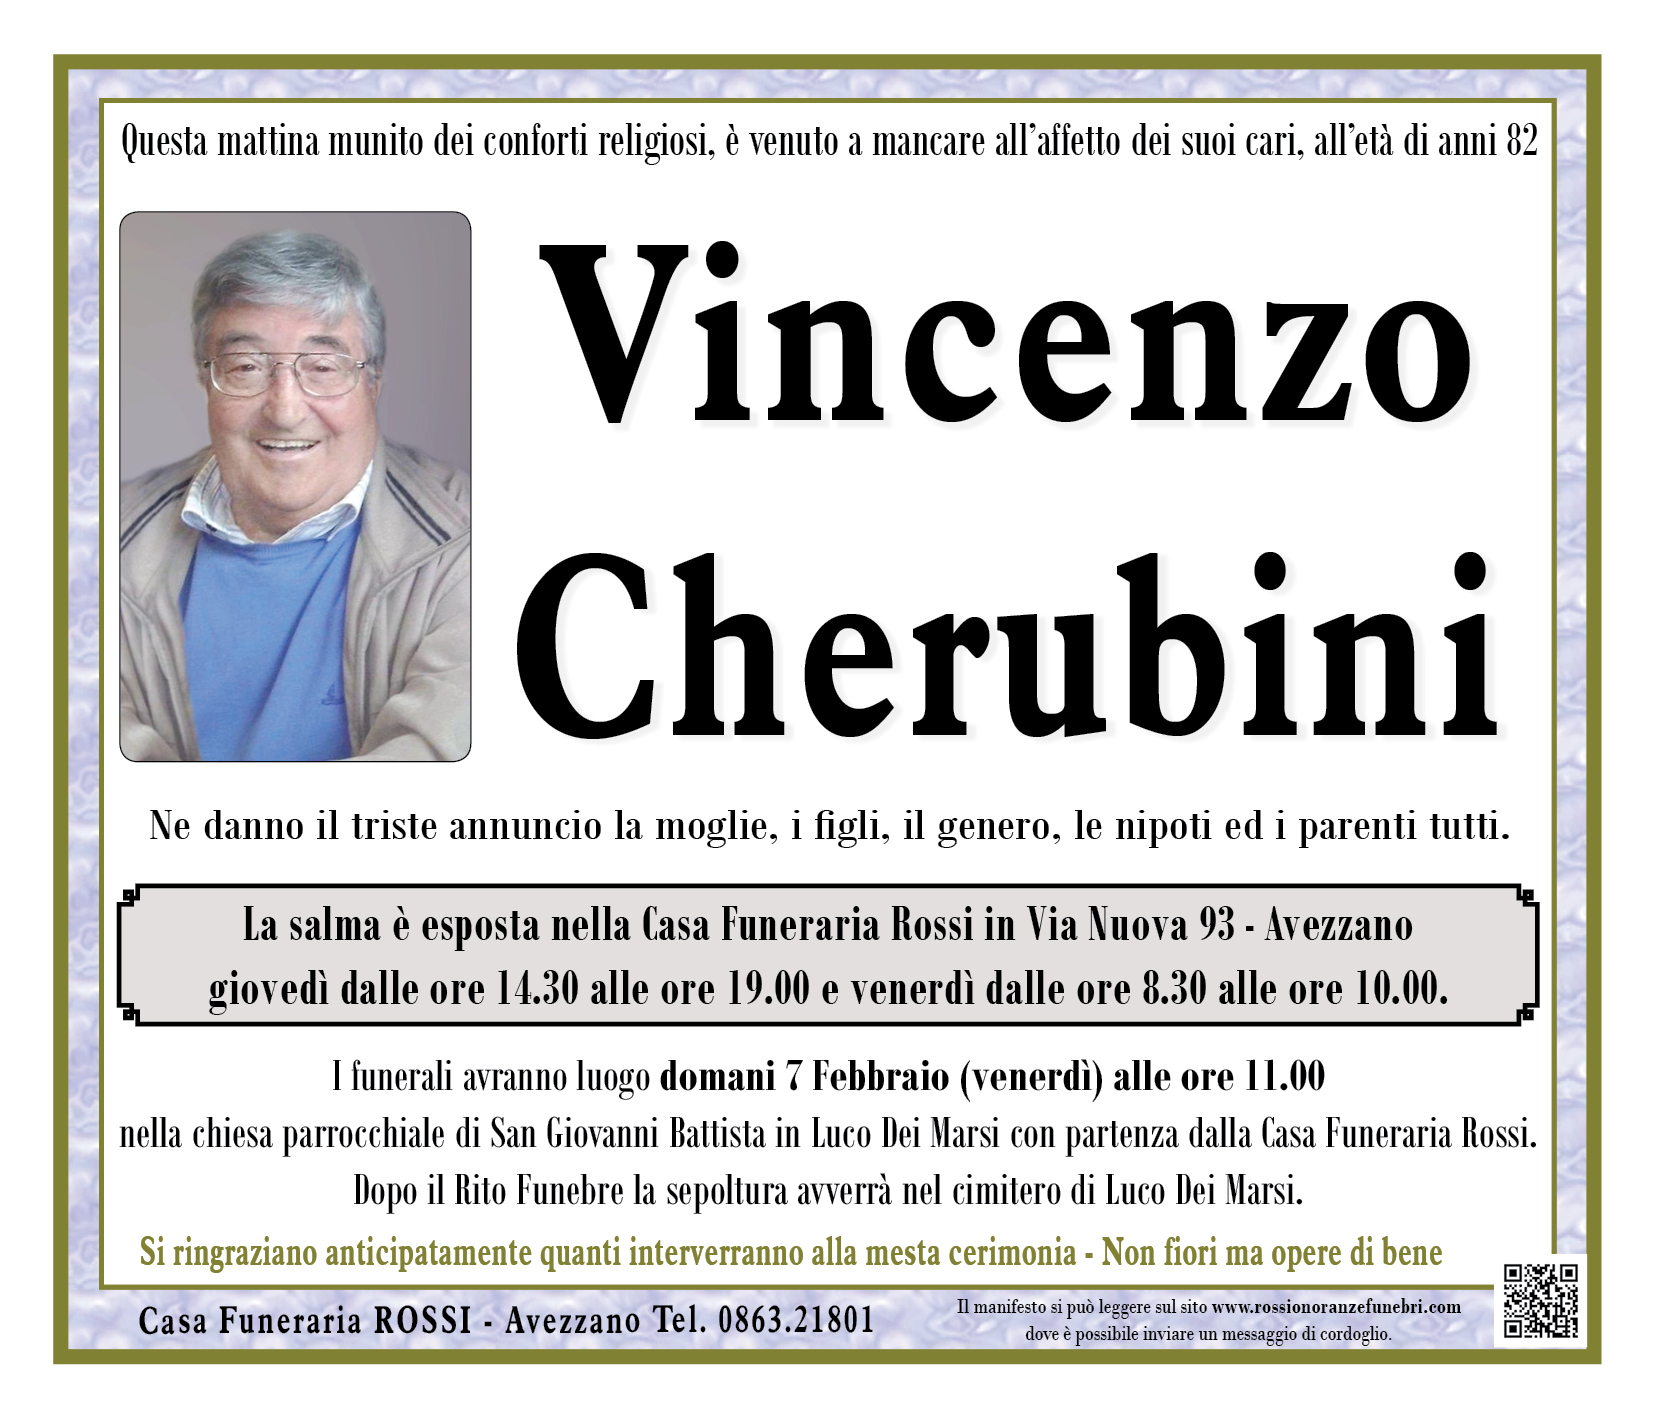 Vincenzo Cherubini